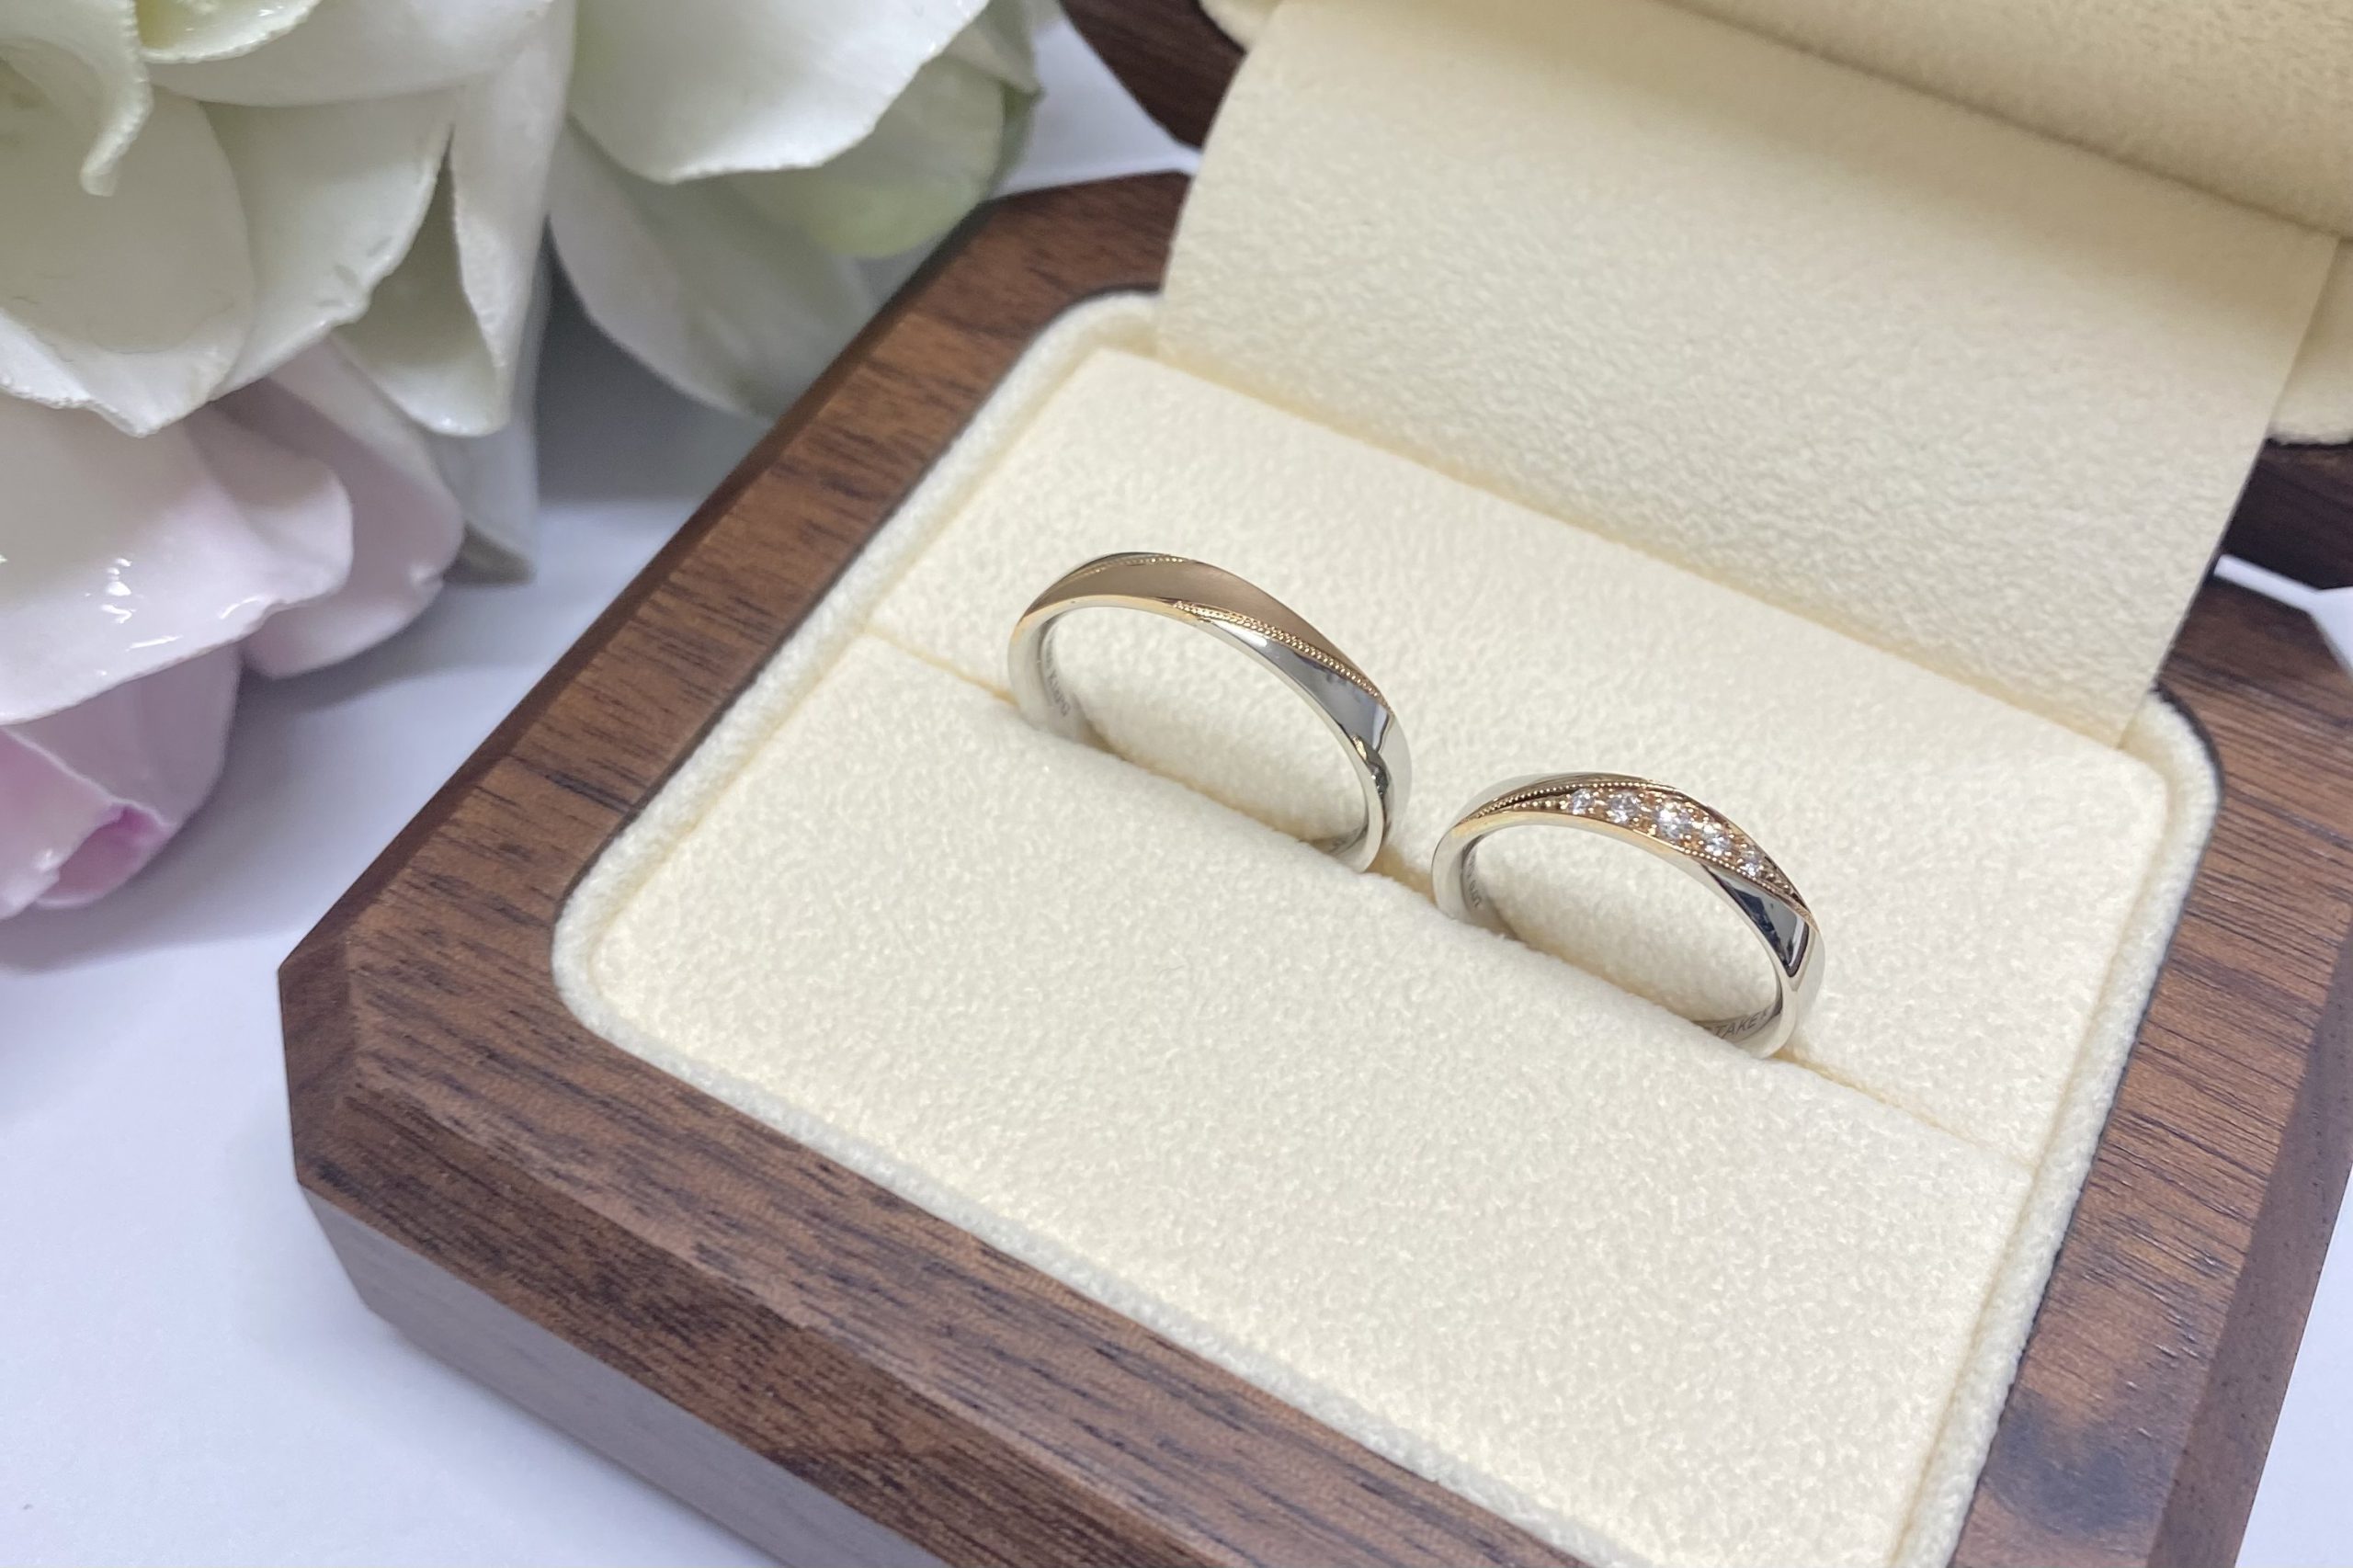 いつまでも飽きのこないデザインを考えて、オリジナルの結婚指輪を。のサムネイル